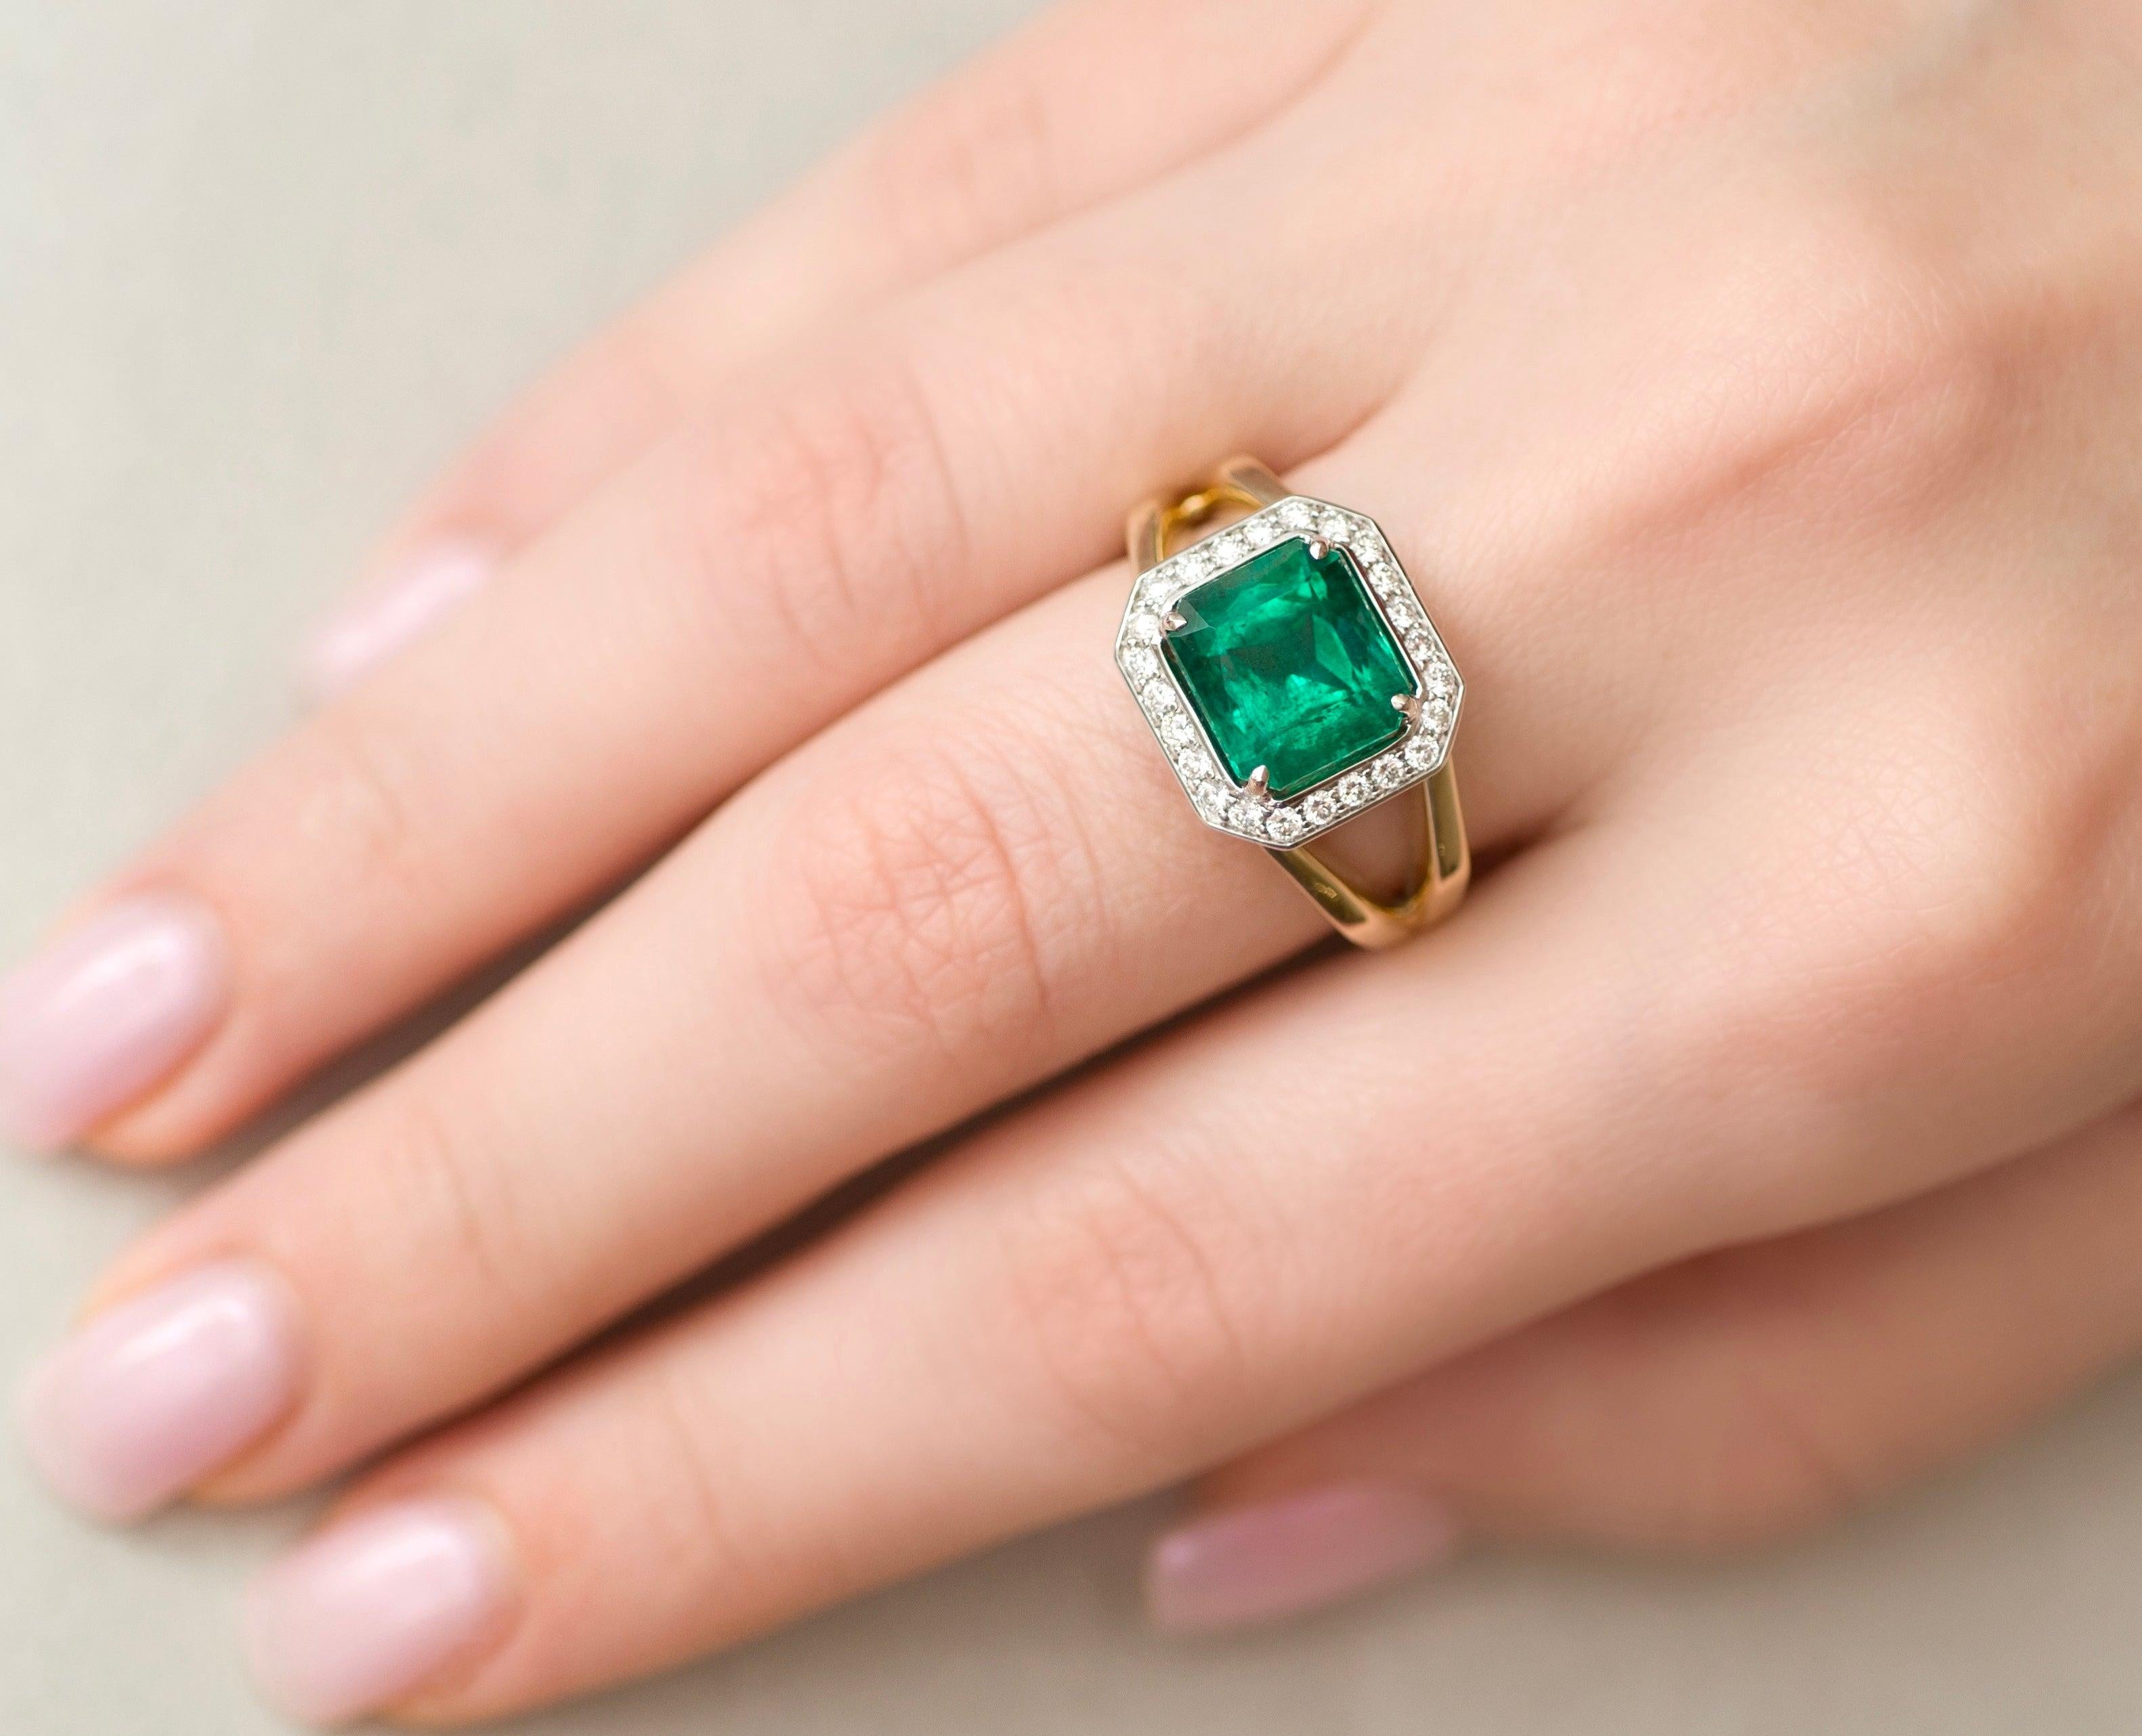 For Sale:  3 Carat Intense Green Natural Emerald Diamonds 18 Karat Yellow White Gold Ring 8